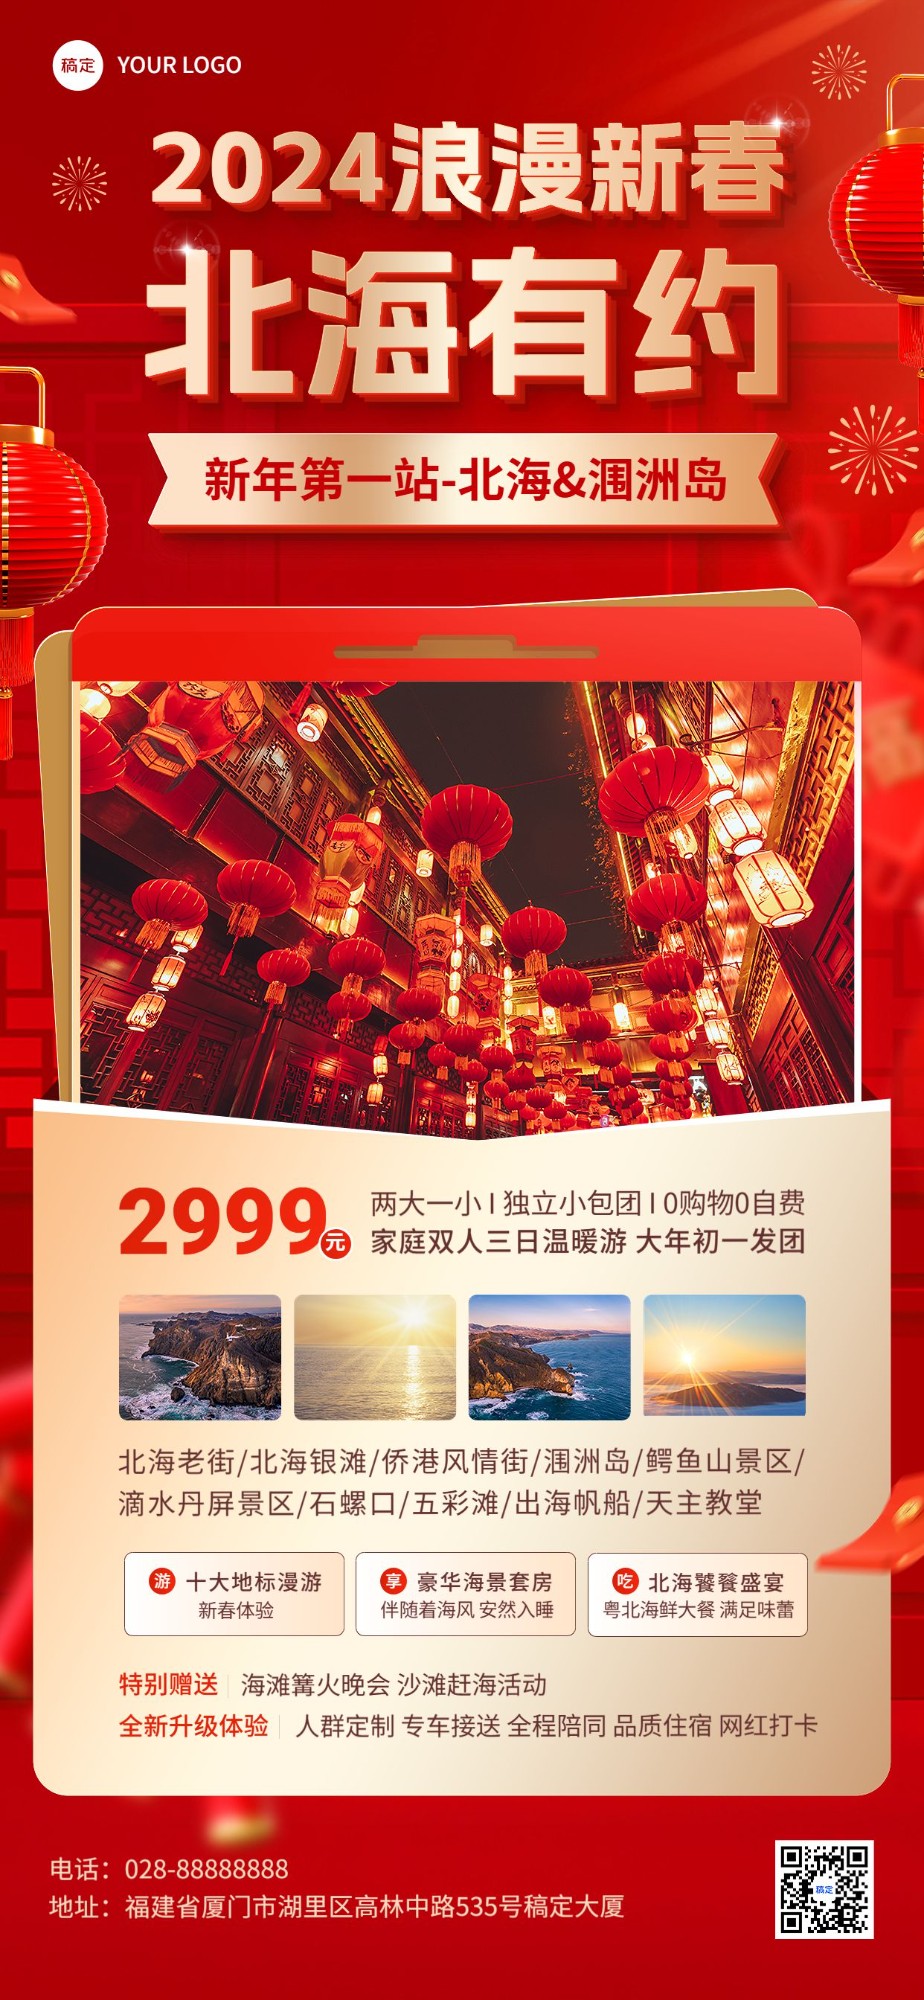 旅游出行春节旅行社北海线路营销宣传全屏竖版海报预览效果